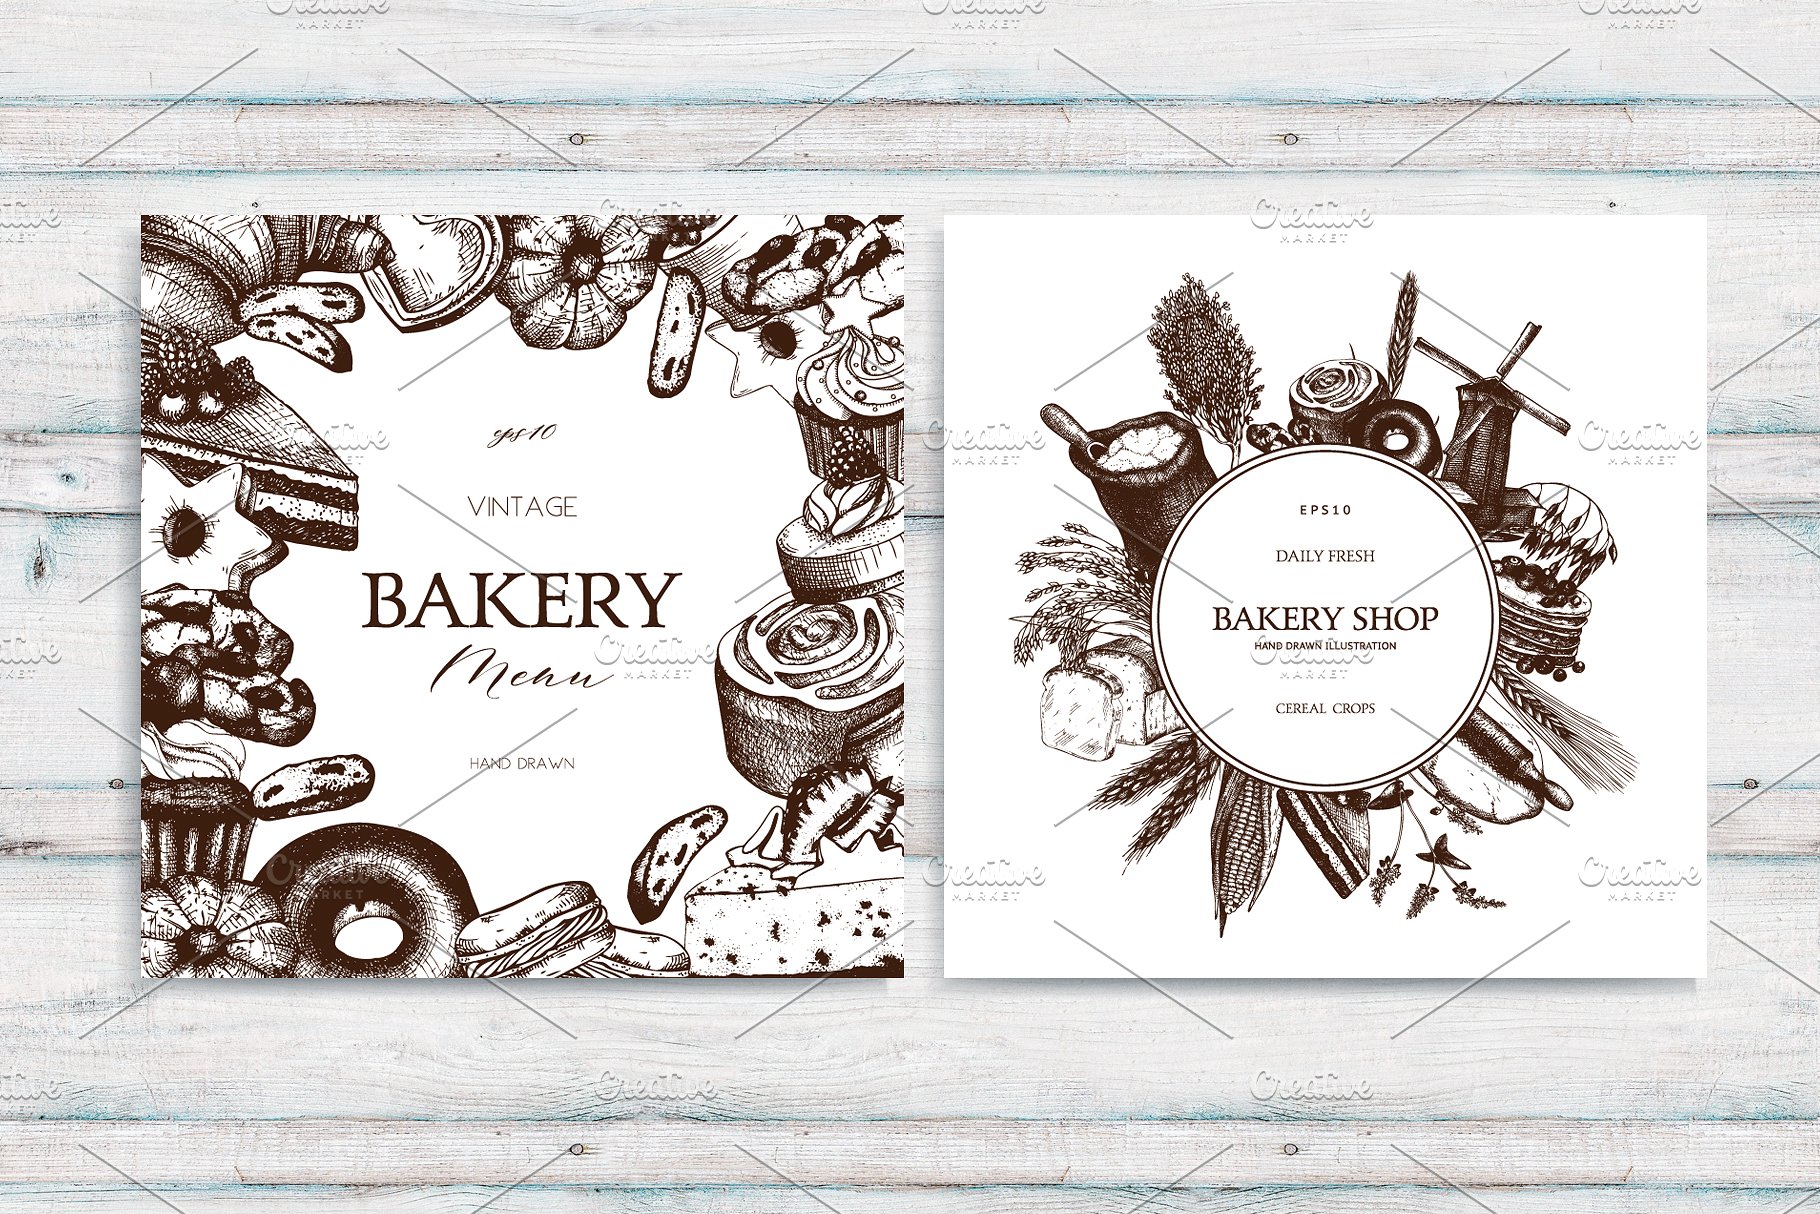 复古面包店手绘素描插画素材合集 Vintage Bakery Menu Designs & Sketch插图(4)